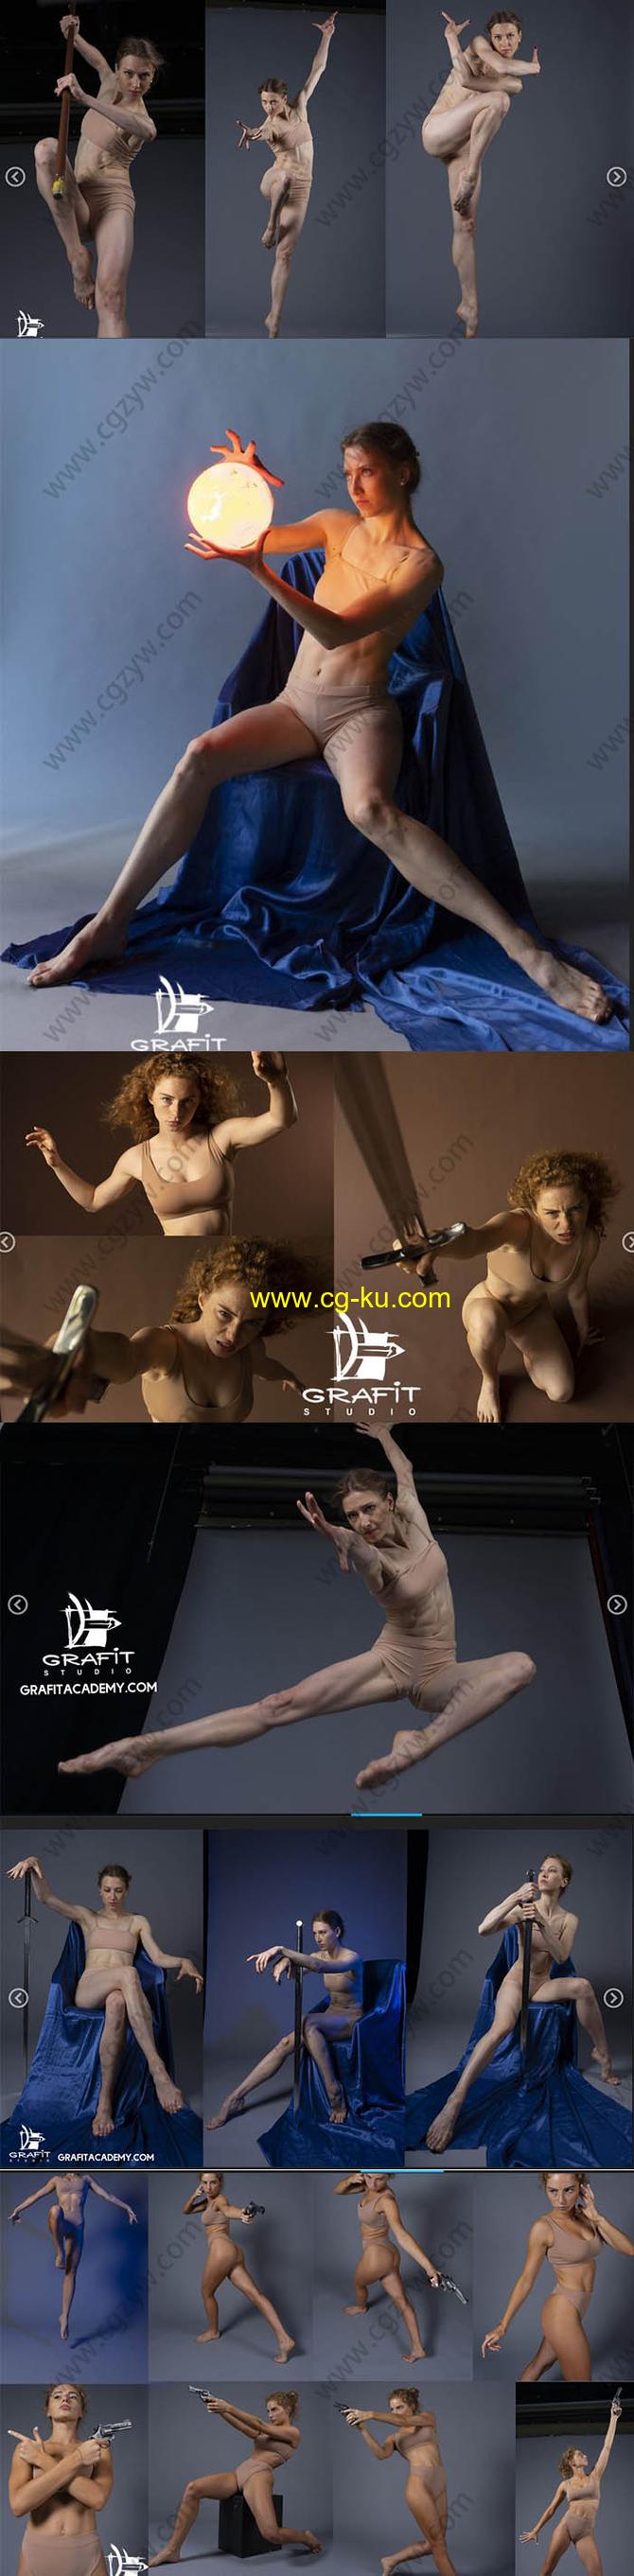 600张女性模特姿势造型艺术参考高清照片合集的图片2